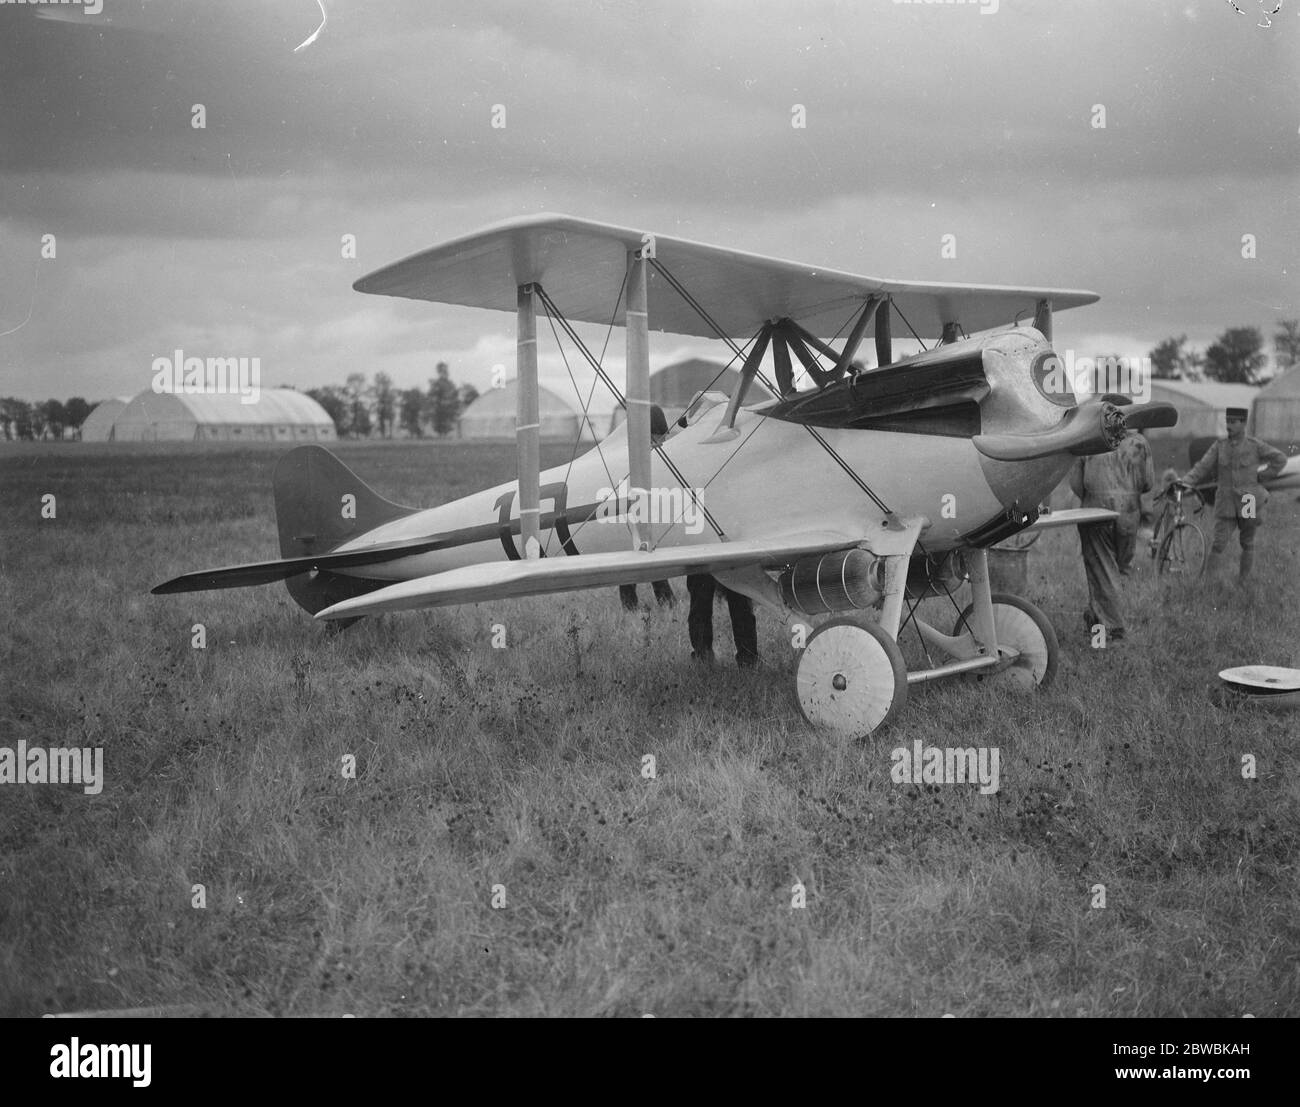 La course aérienne de l'année Résultats du procès en français Sidi Lecointe' s Hieuport 2 octobre 1920 Banque D'Images